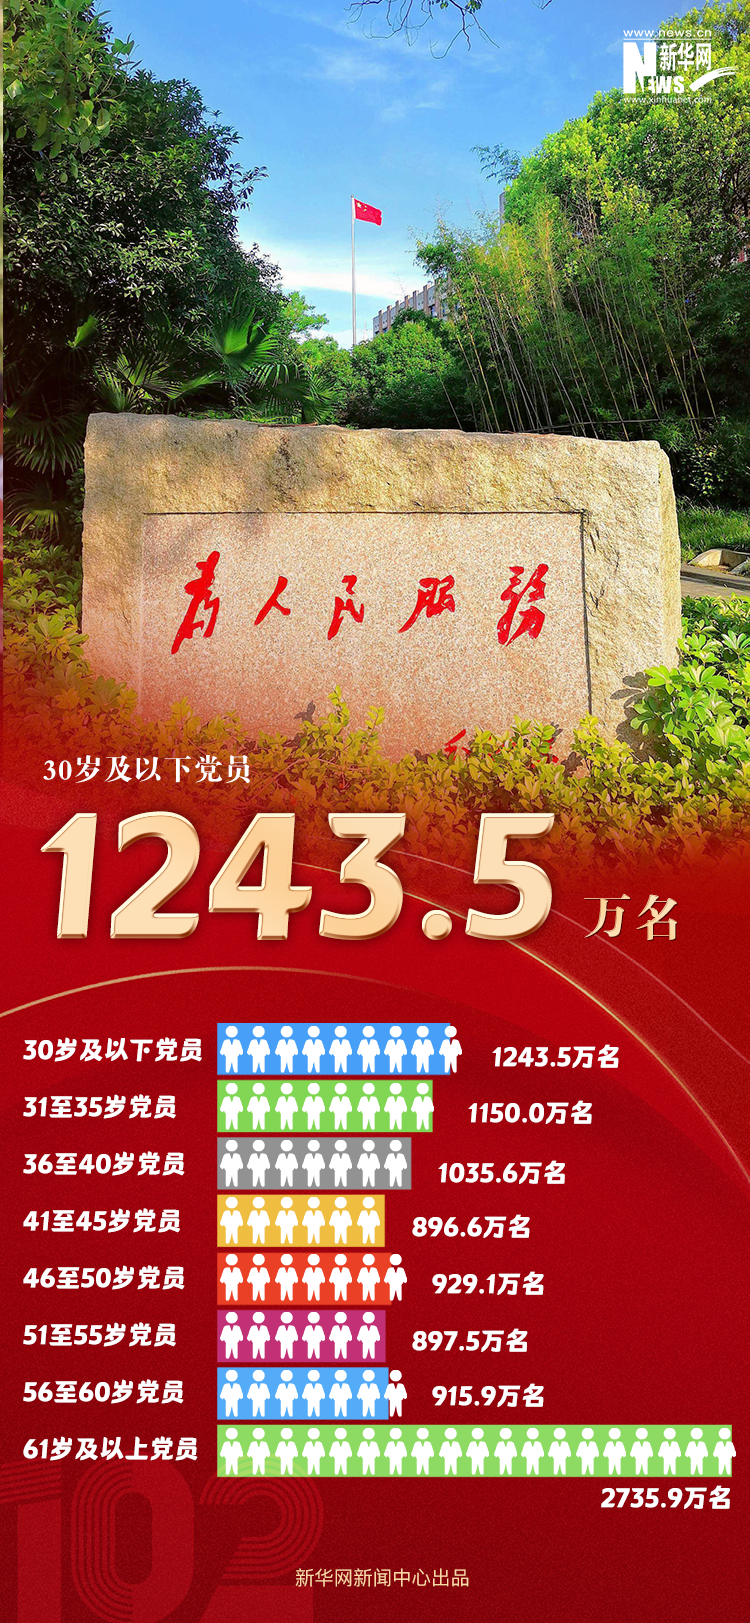 9804.1万名！数读最新中国共产党党内统计公报